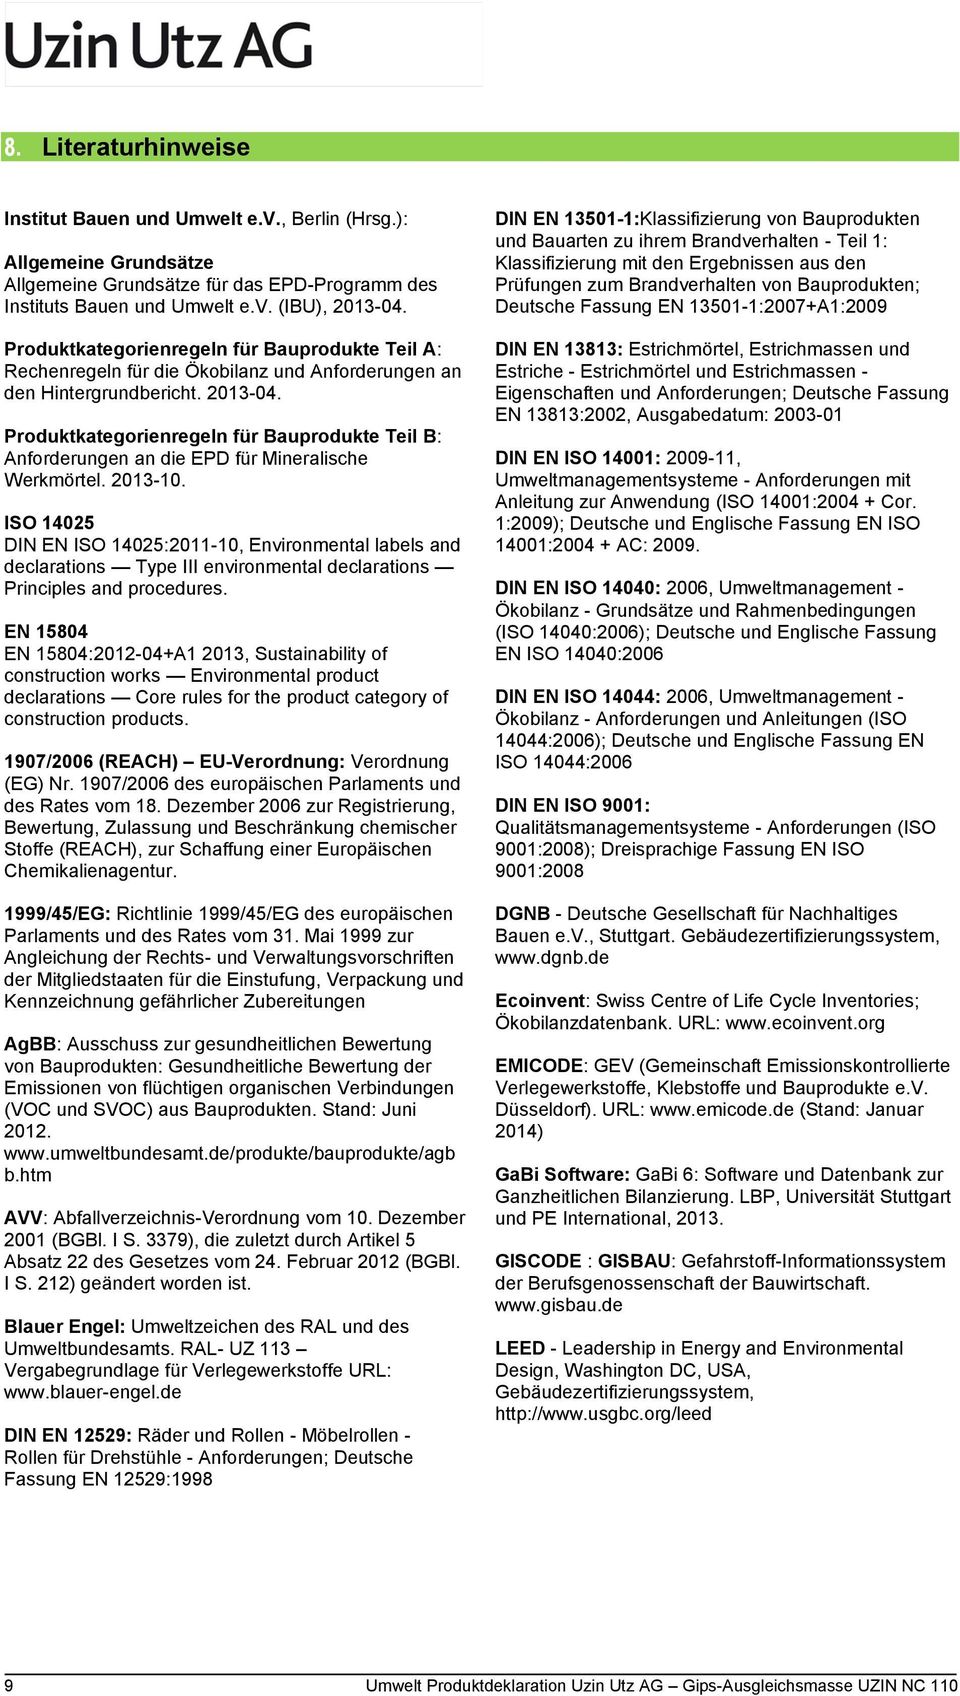 Produktkategorienregeln für Bauprodukte Teil B: Anforderungen an die EPD für Mineralische Werkmörtel. 2013-10.